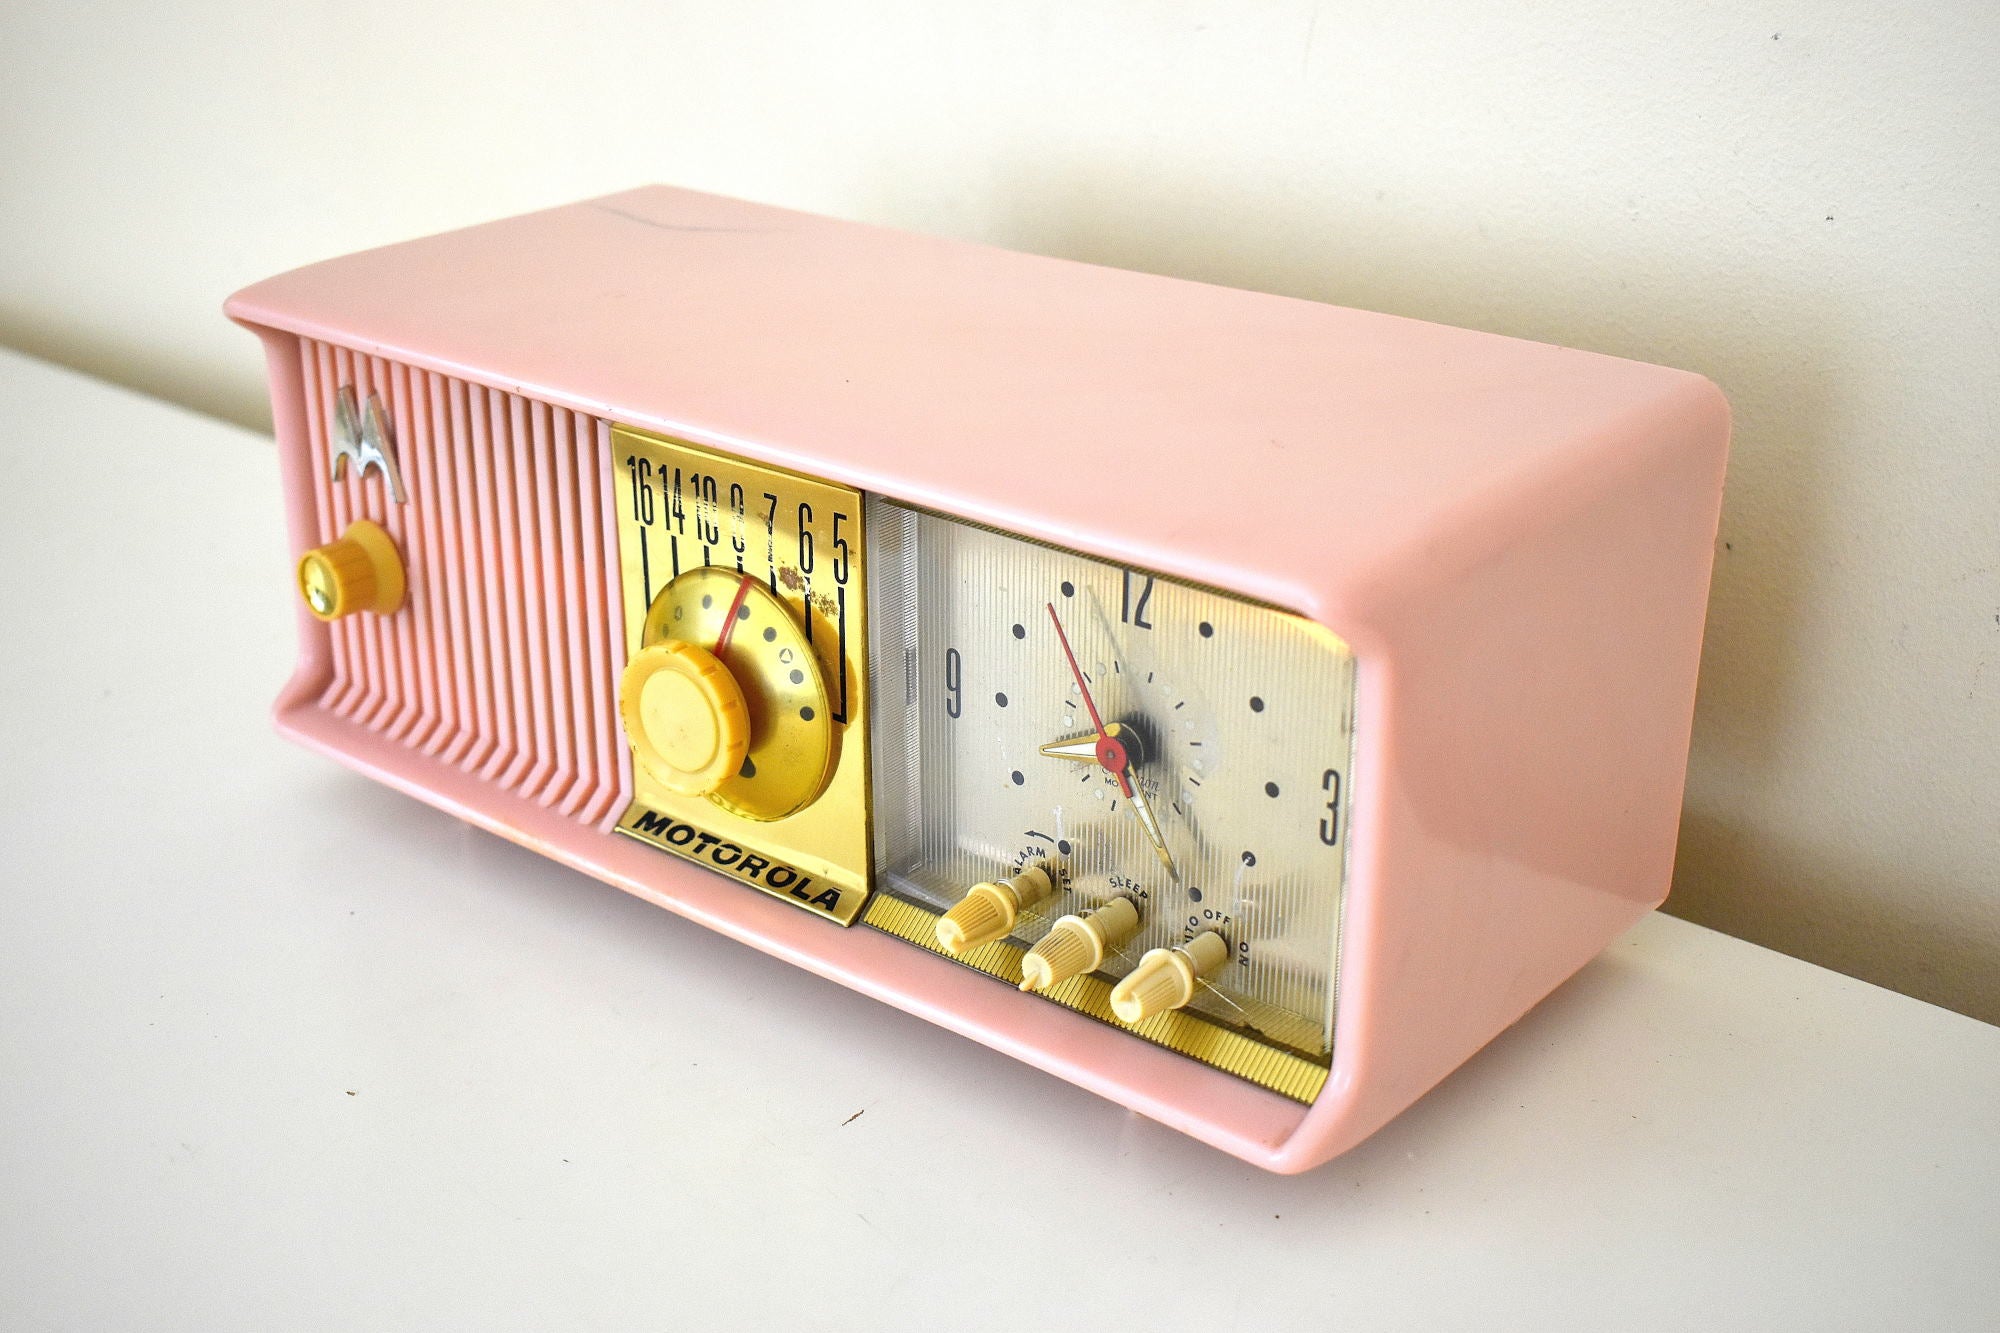 マリリン ピンク 1957 モトローラ モデル 56CD3 真空管 AM クロック ラジオ She's a Babe 素晴らしいサウンドです。